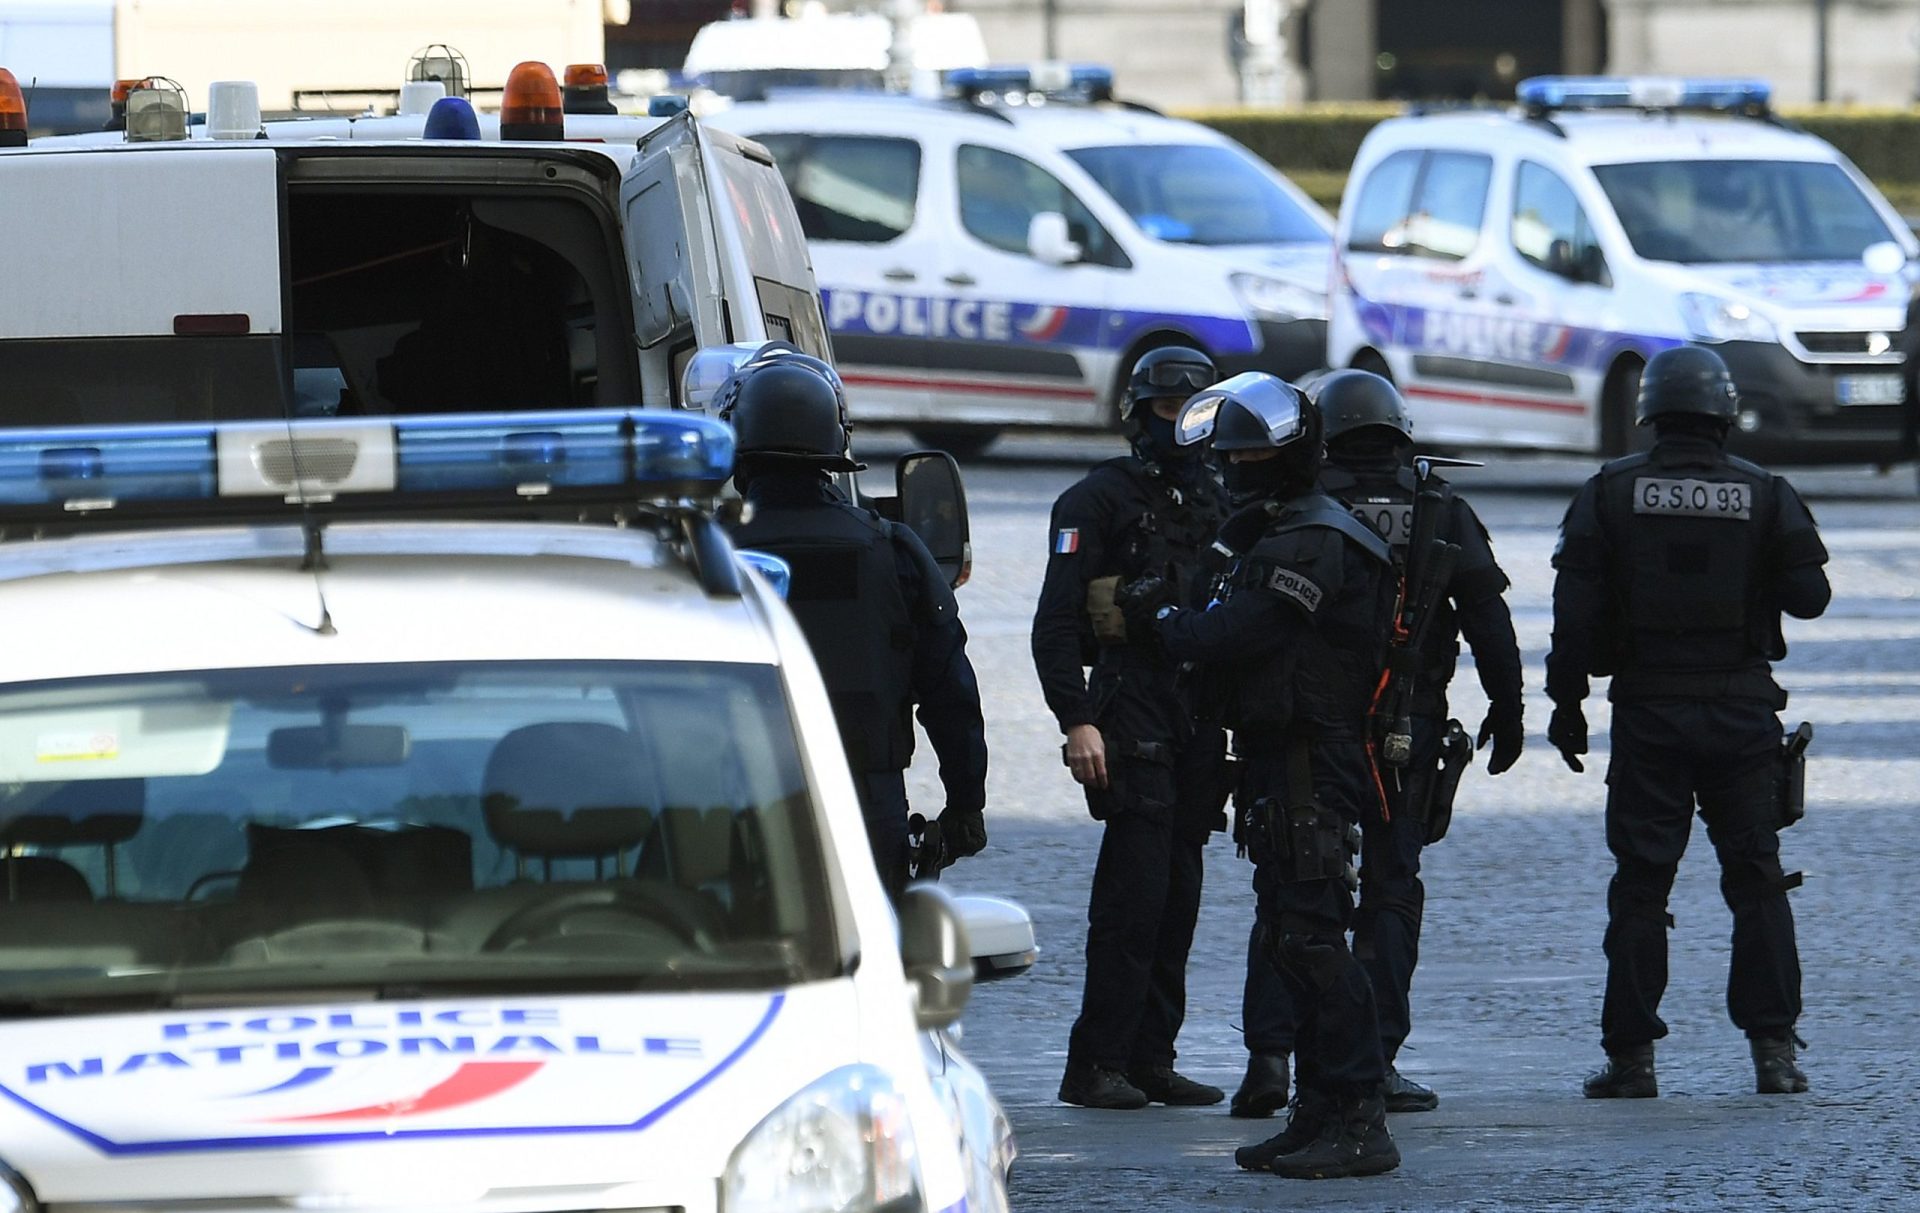 Militar dispara contra agressor junto ao museu do Louvre